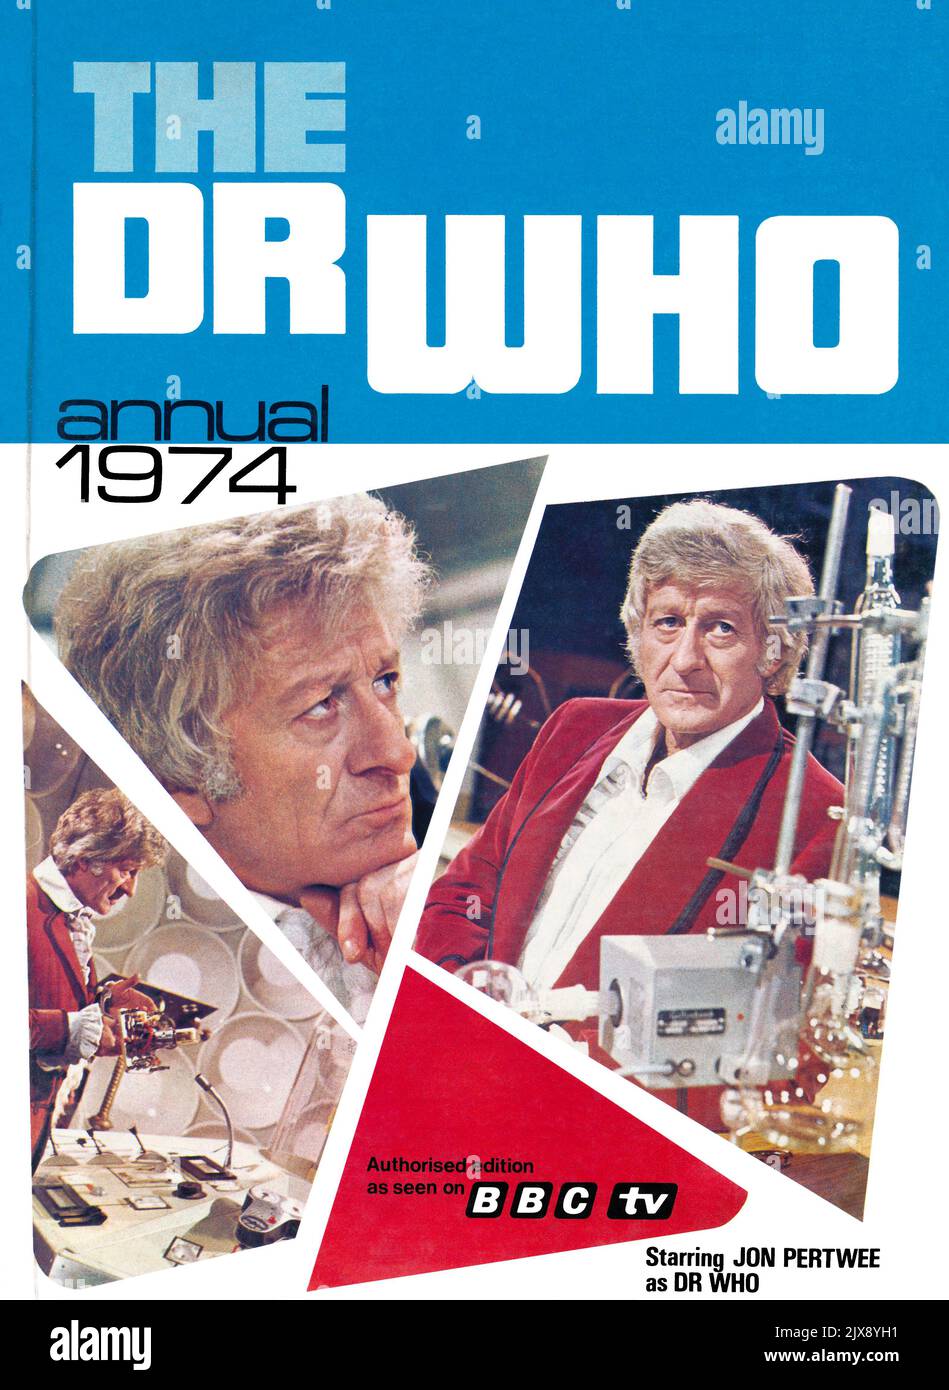 Copertina di un Doctor Who vintage che si svolge ogni anno dal 1974, con Jon Pertwee come viaggiatore del tempo. Foto Stock